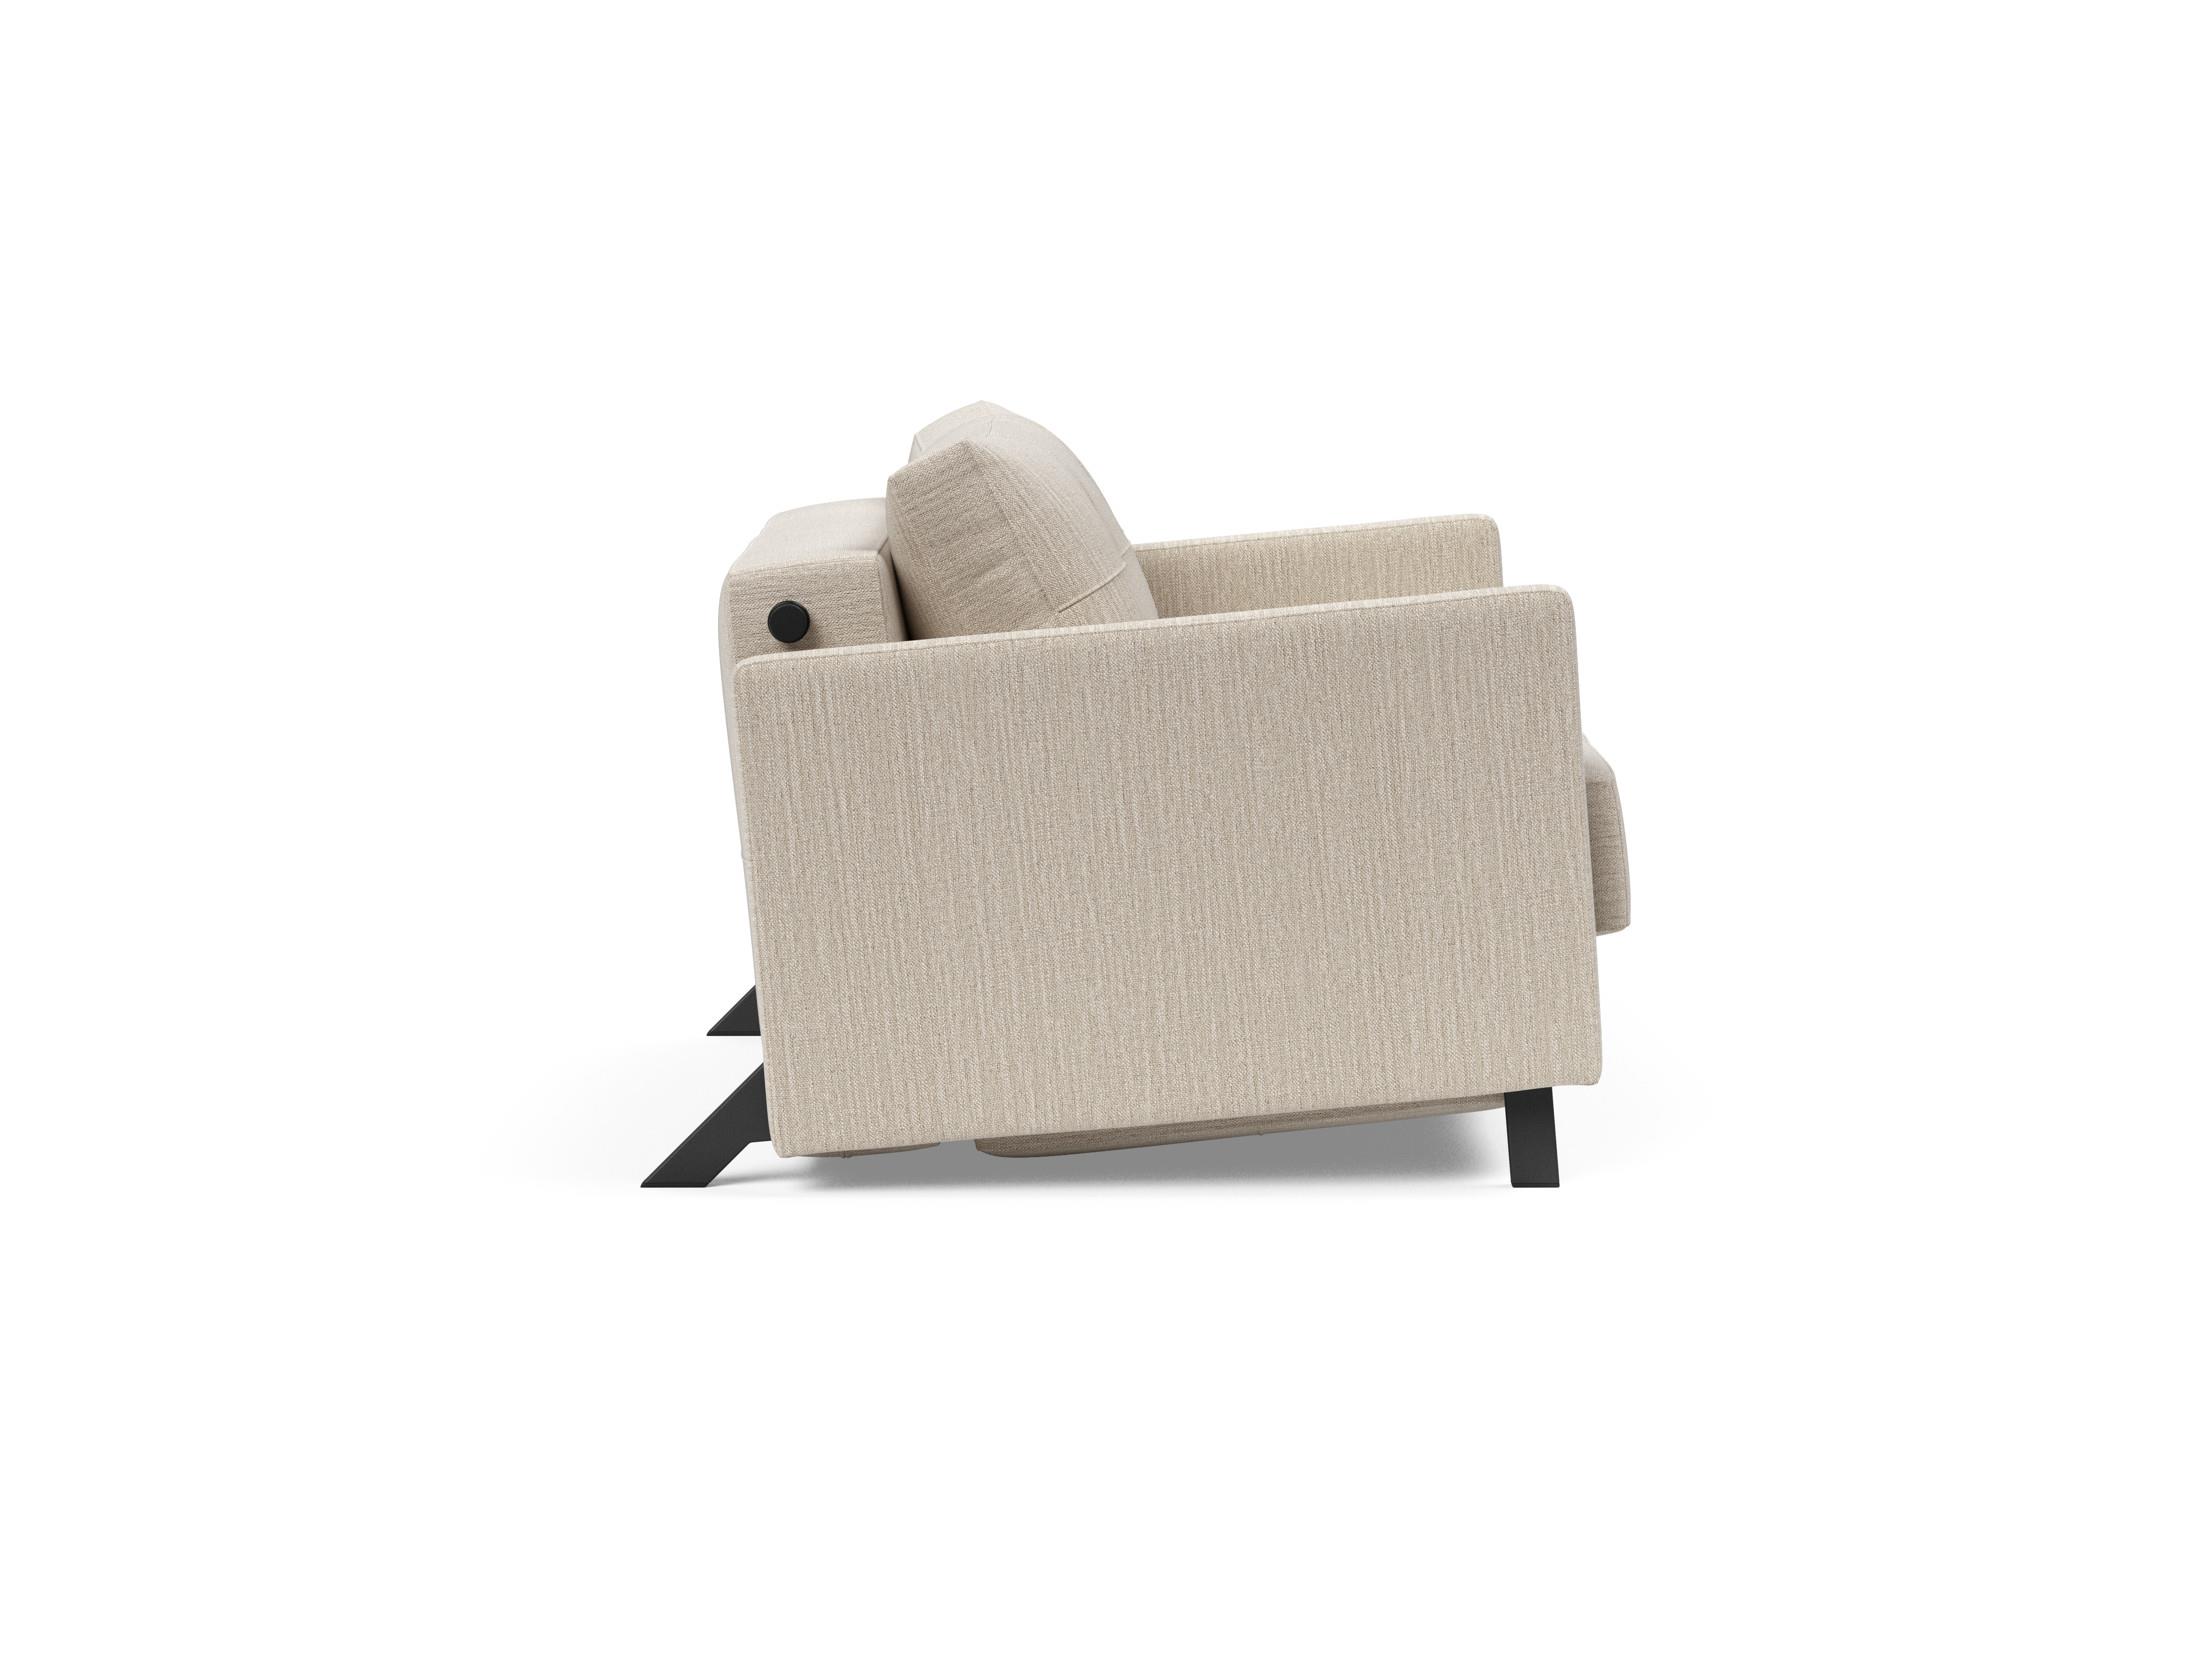 Cubed 140. Кресло-кровать Cubed 90 Innovation. Кресло Innovation Cubed. Innovation Cubed кресло кровать. Кресло Cubed Deluxe.